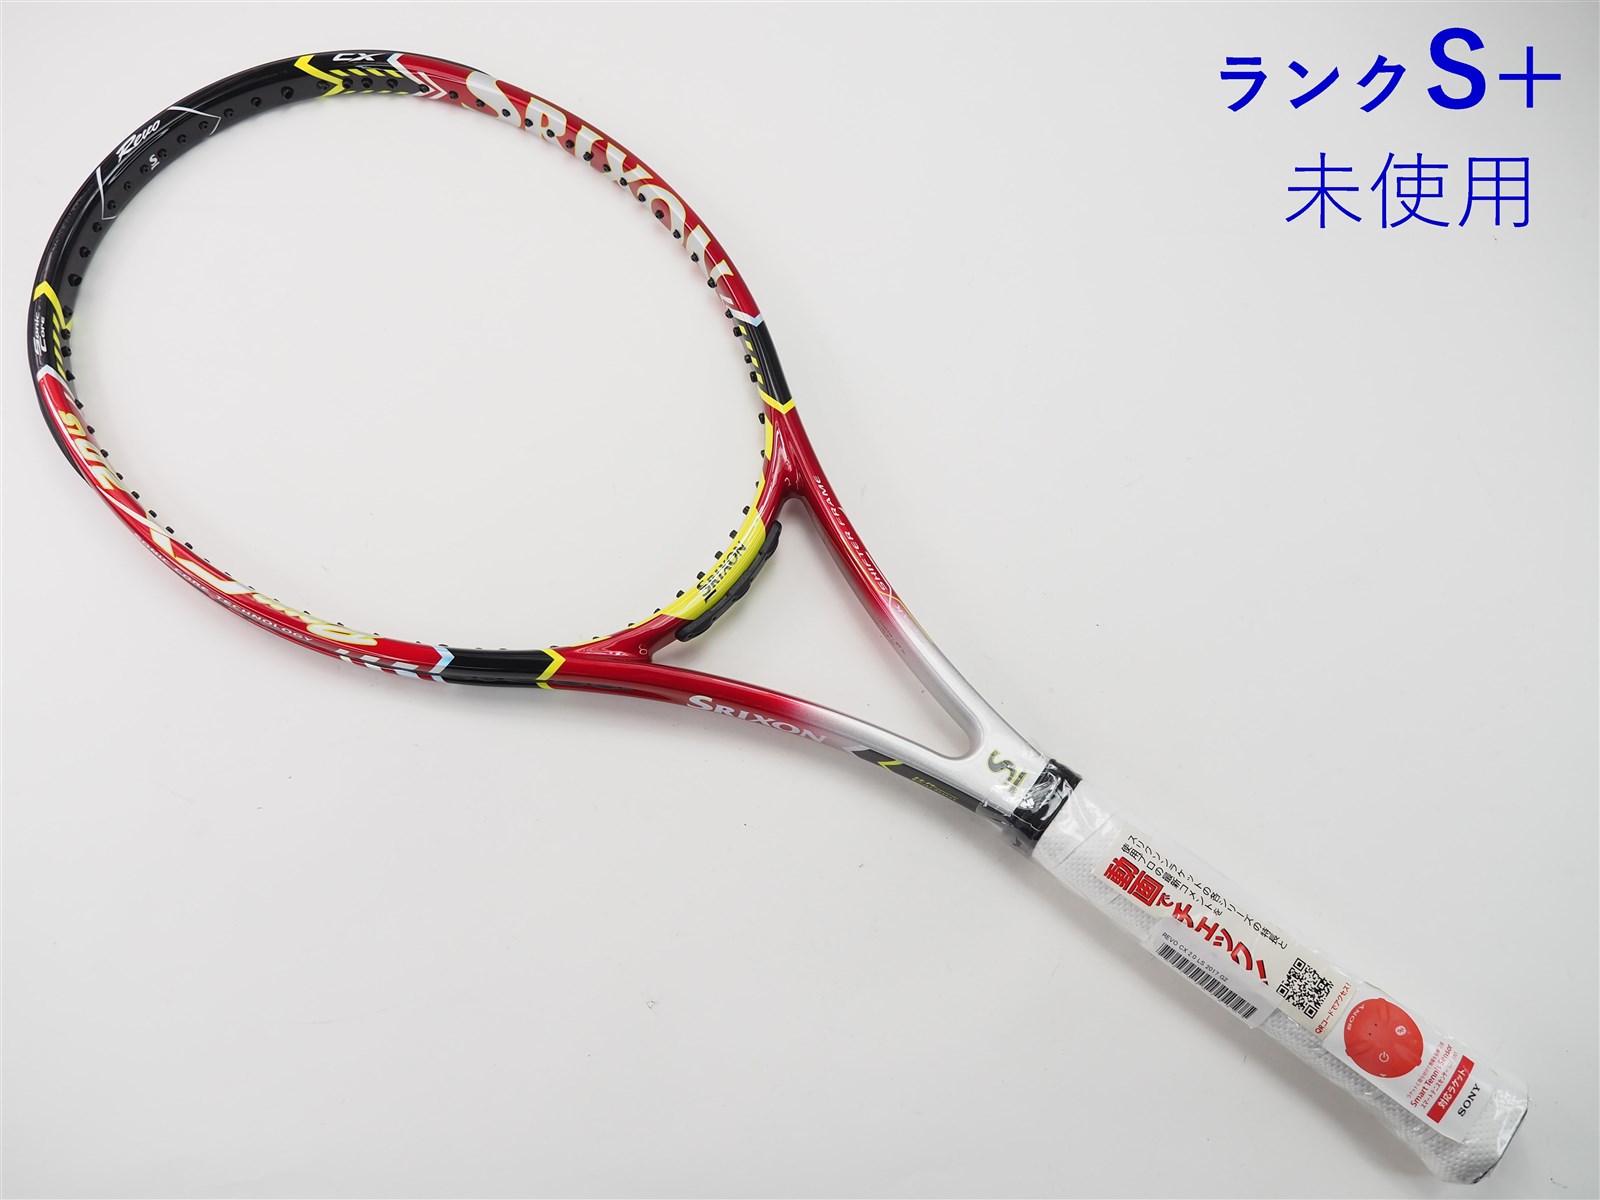 テニスラケット スリクソン レヴォ シーエックス 2.0 2017年モデル (G2